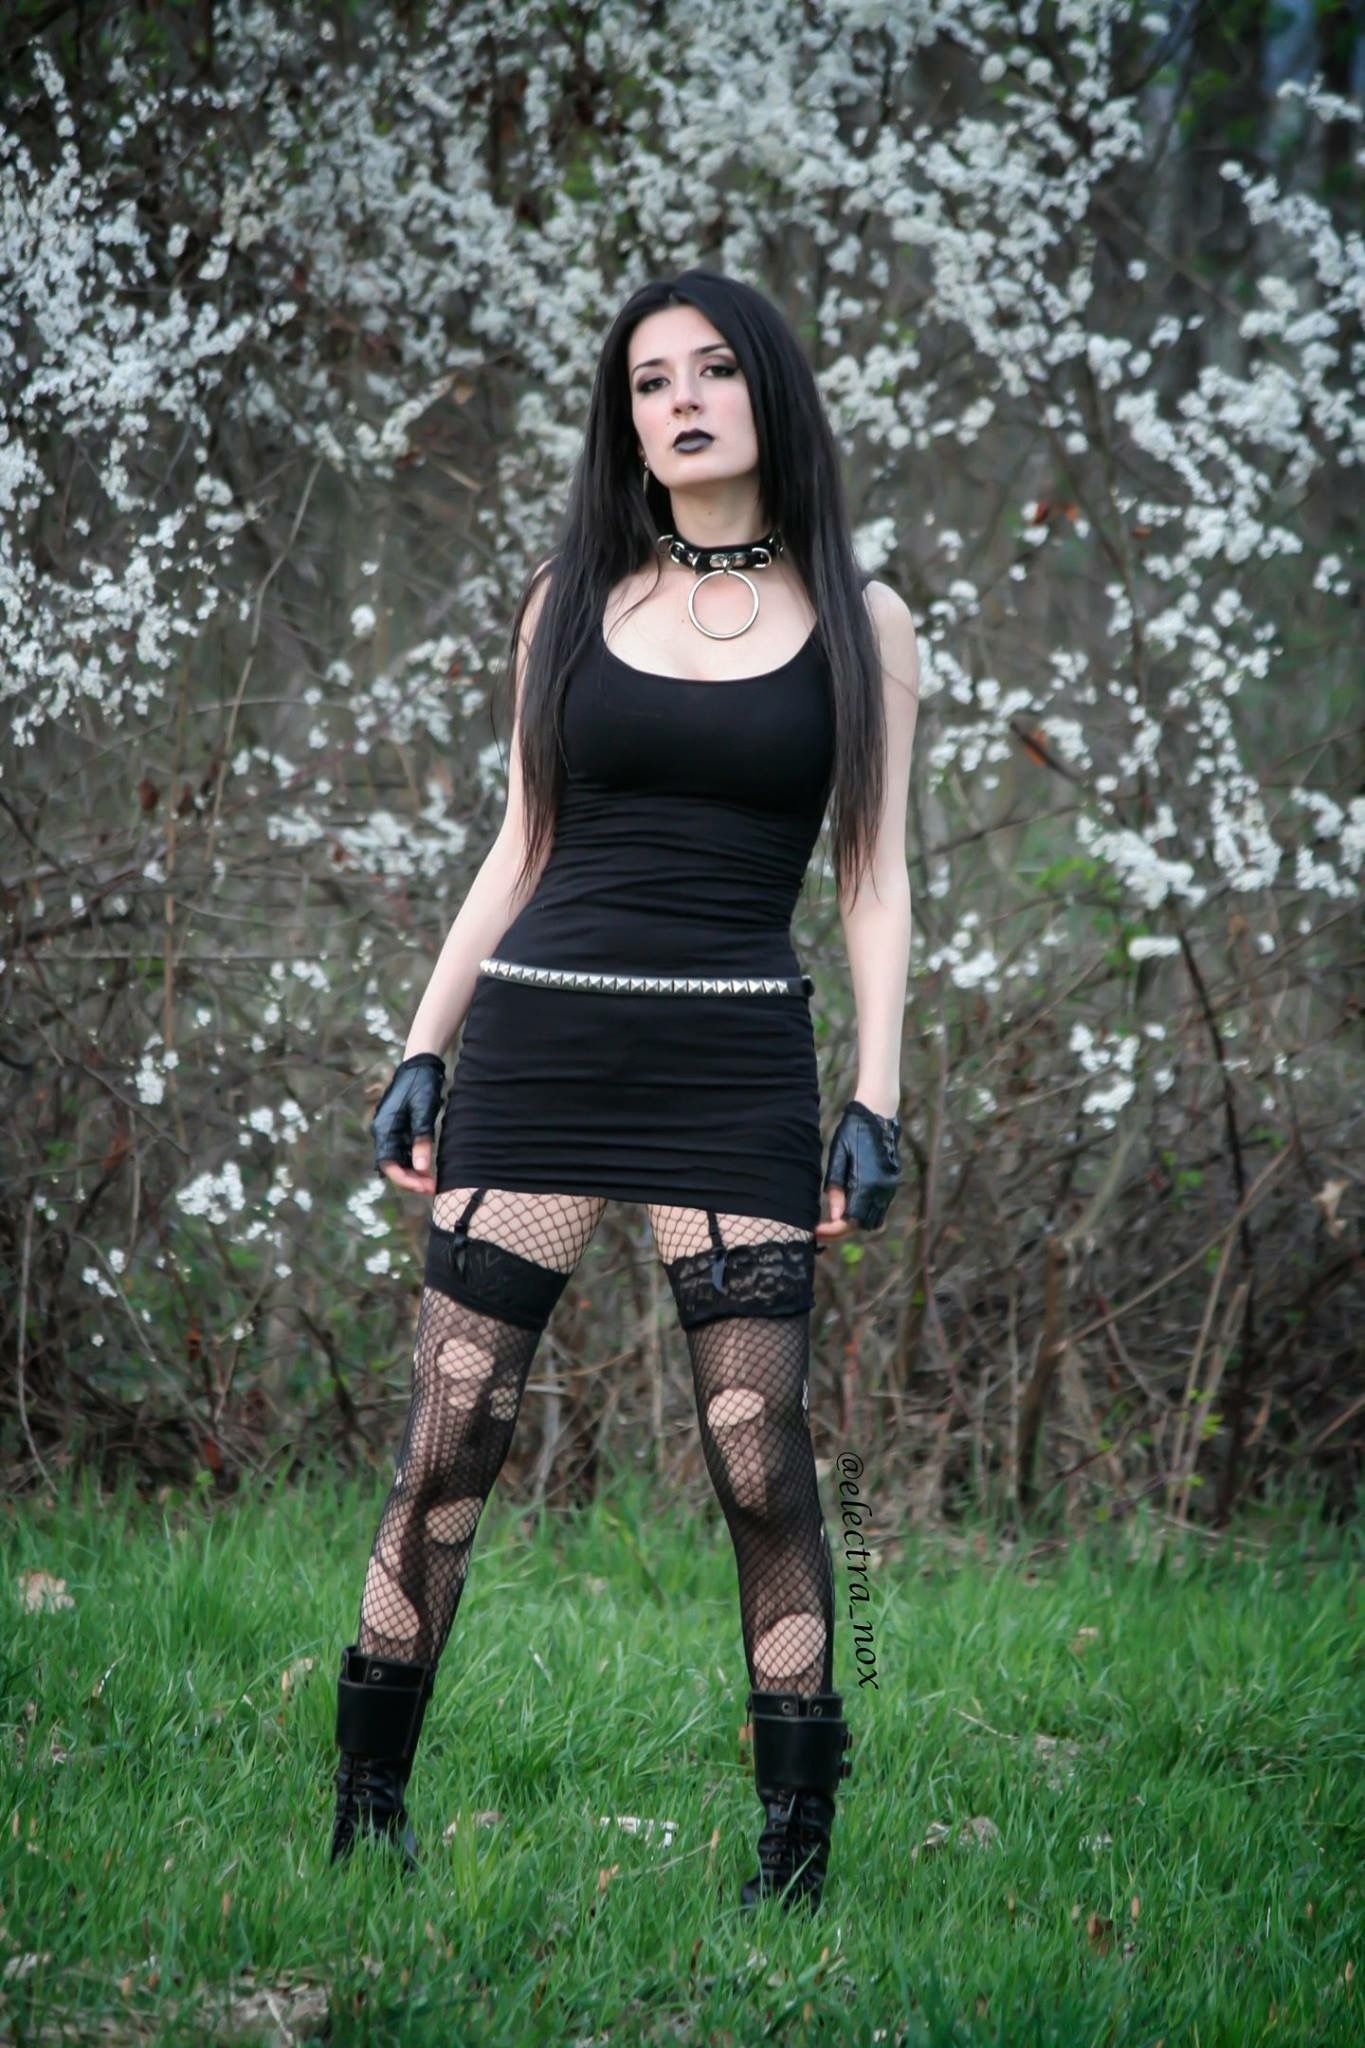 electra nox gothic fashion goth